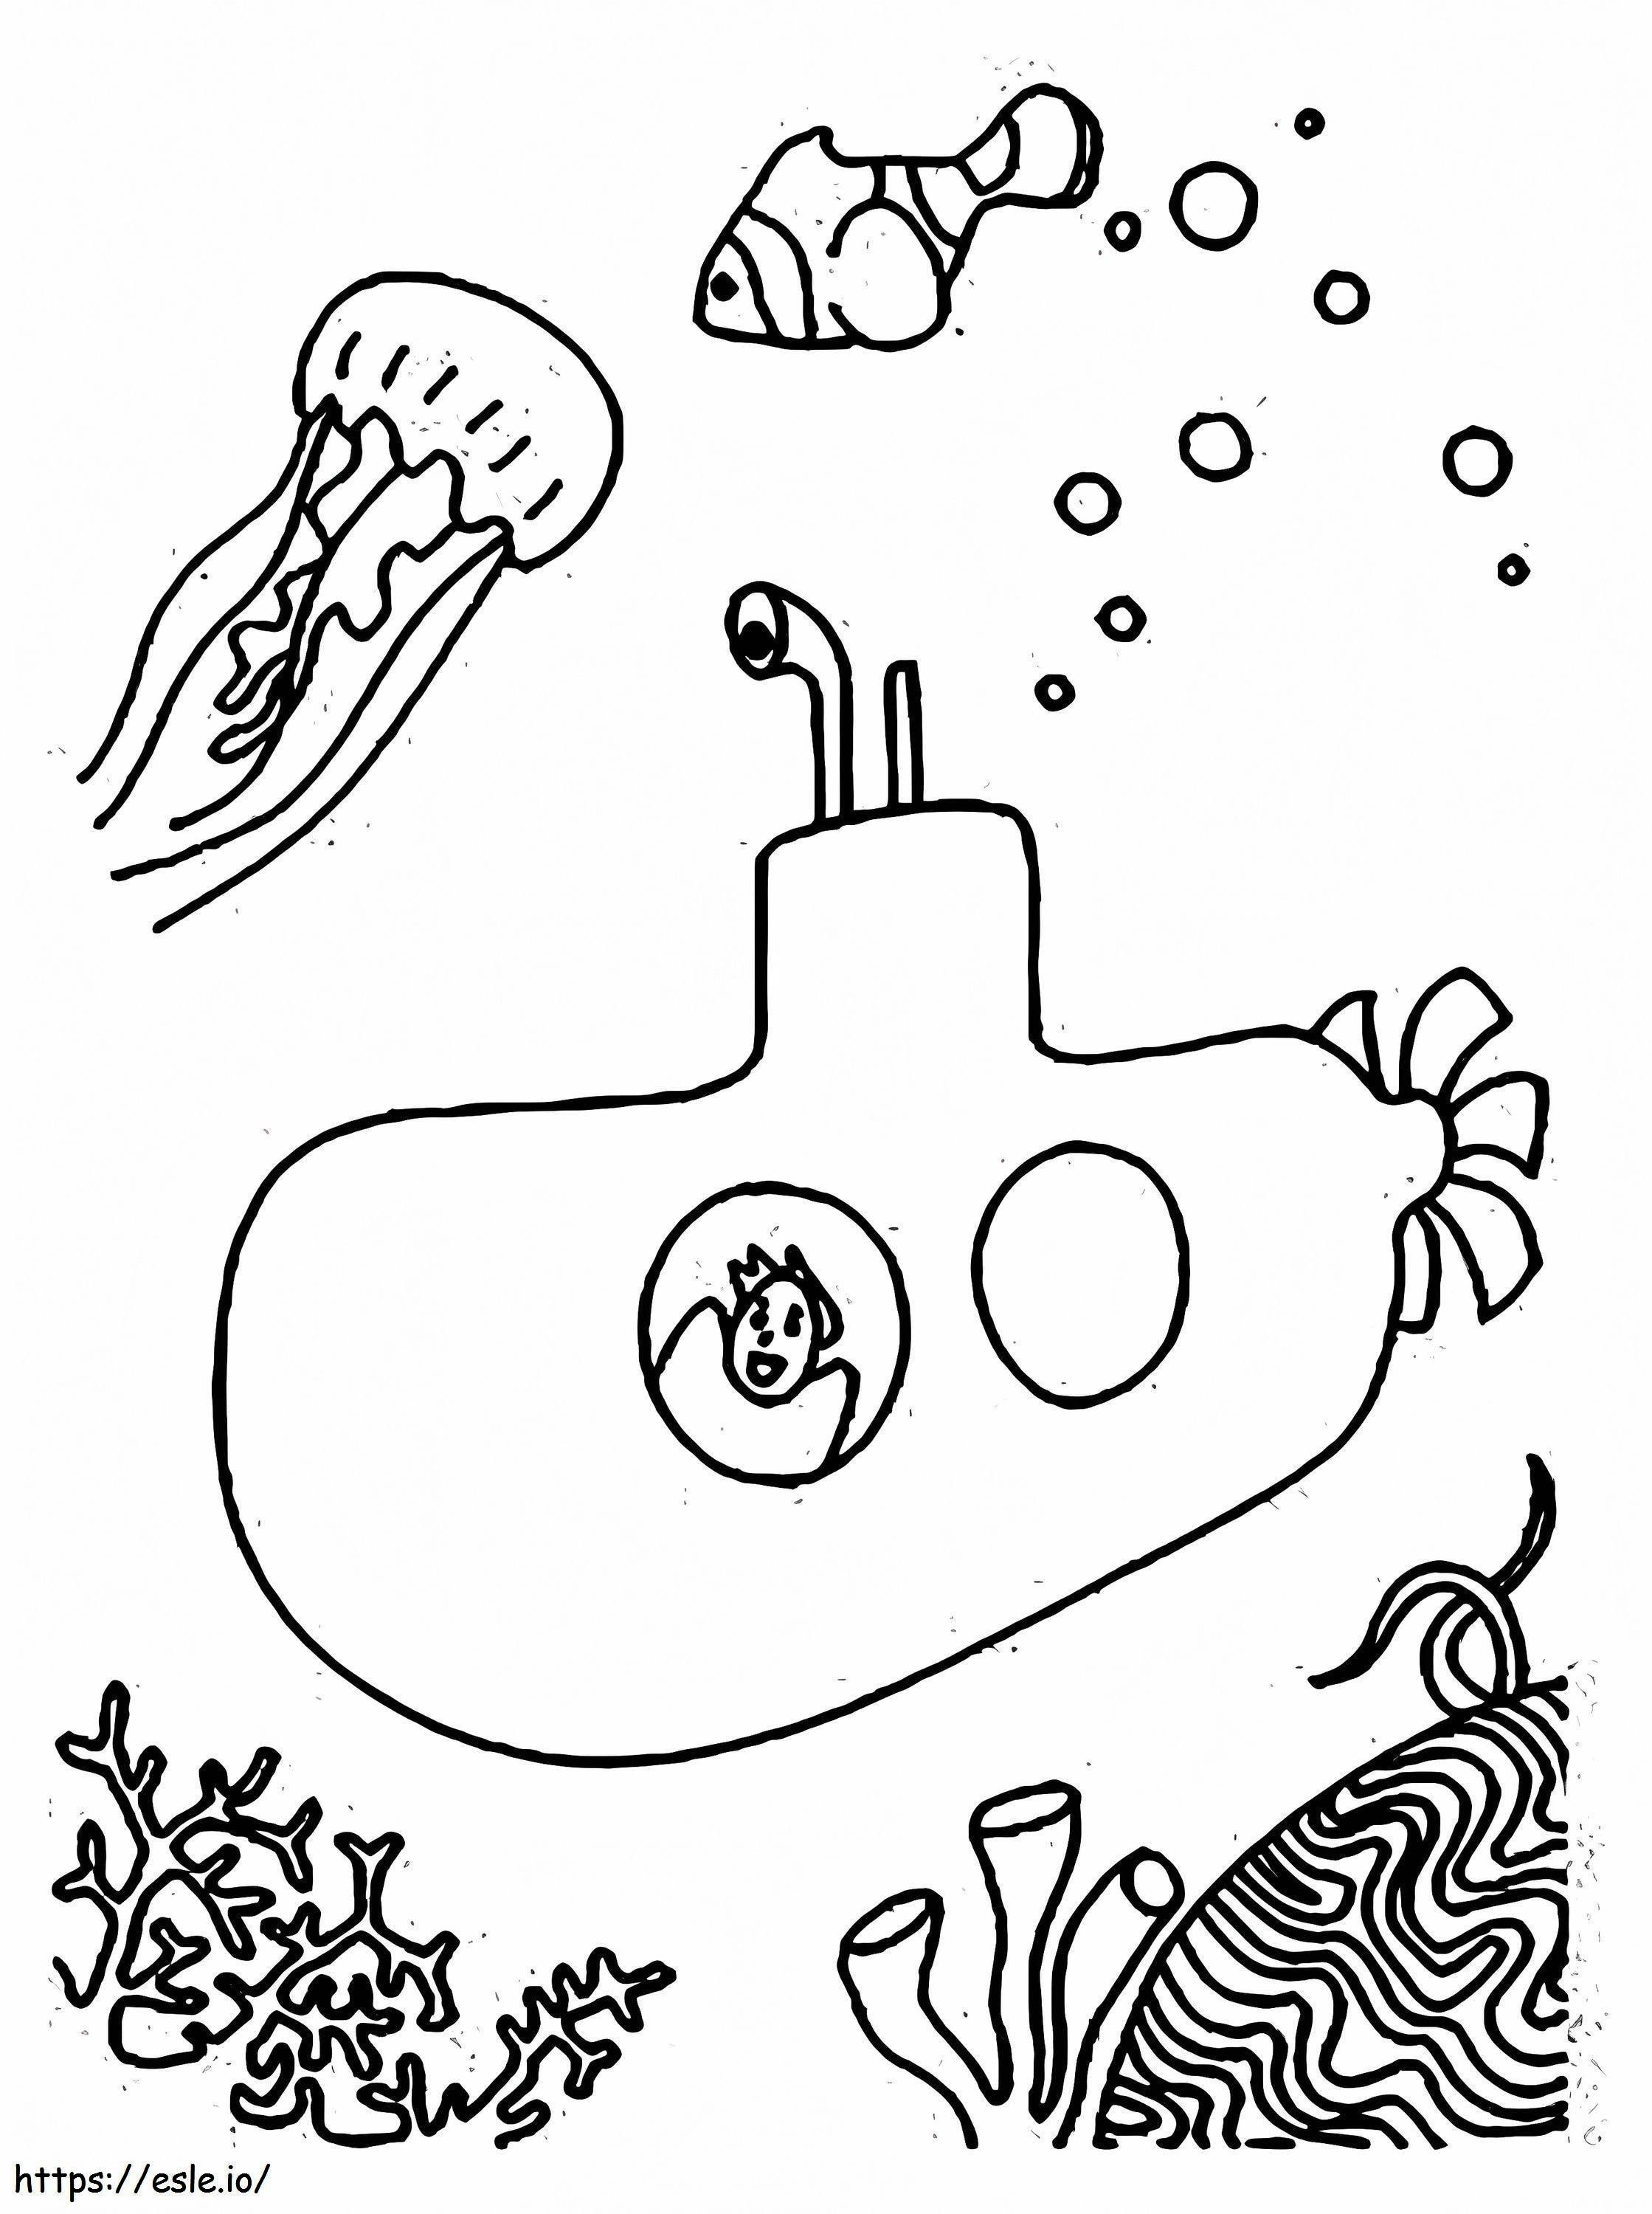 Menino em um submarino para colorir